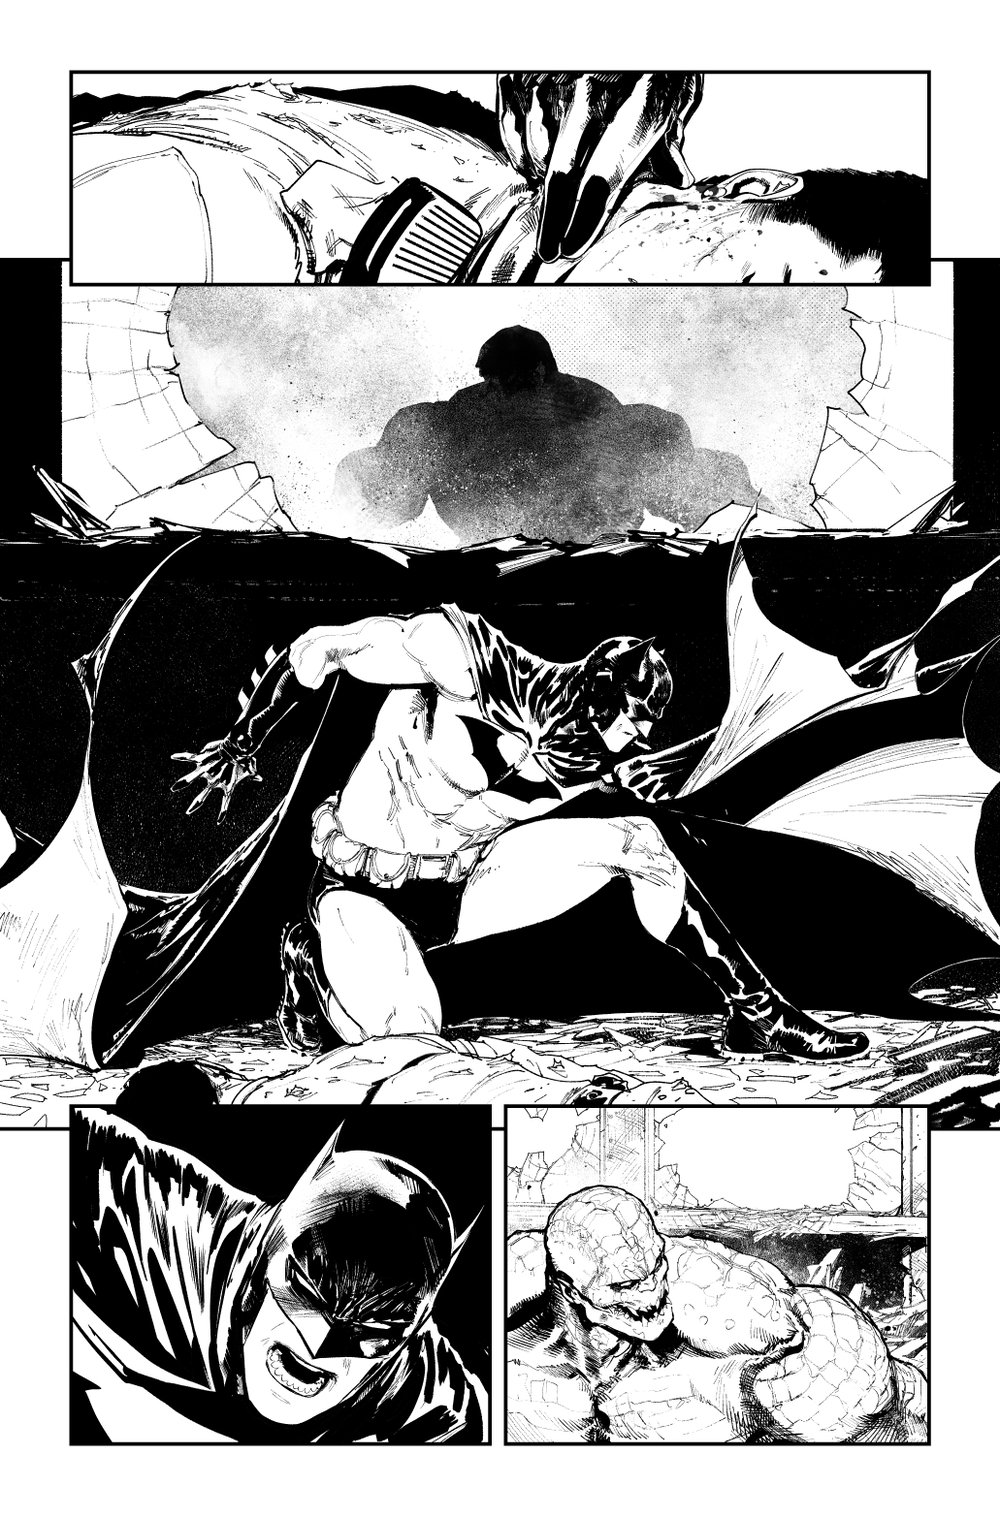 Image of BATMAN KILLING TIME #1 p.12